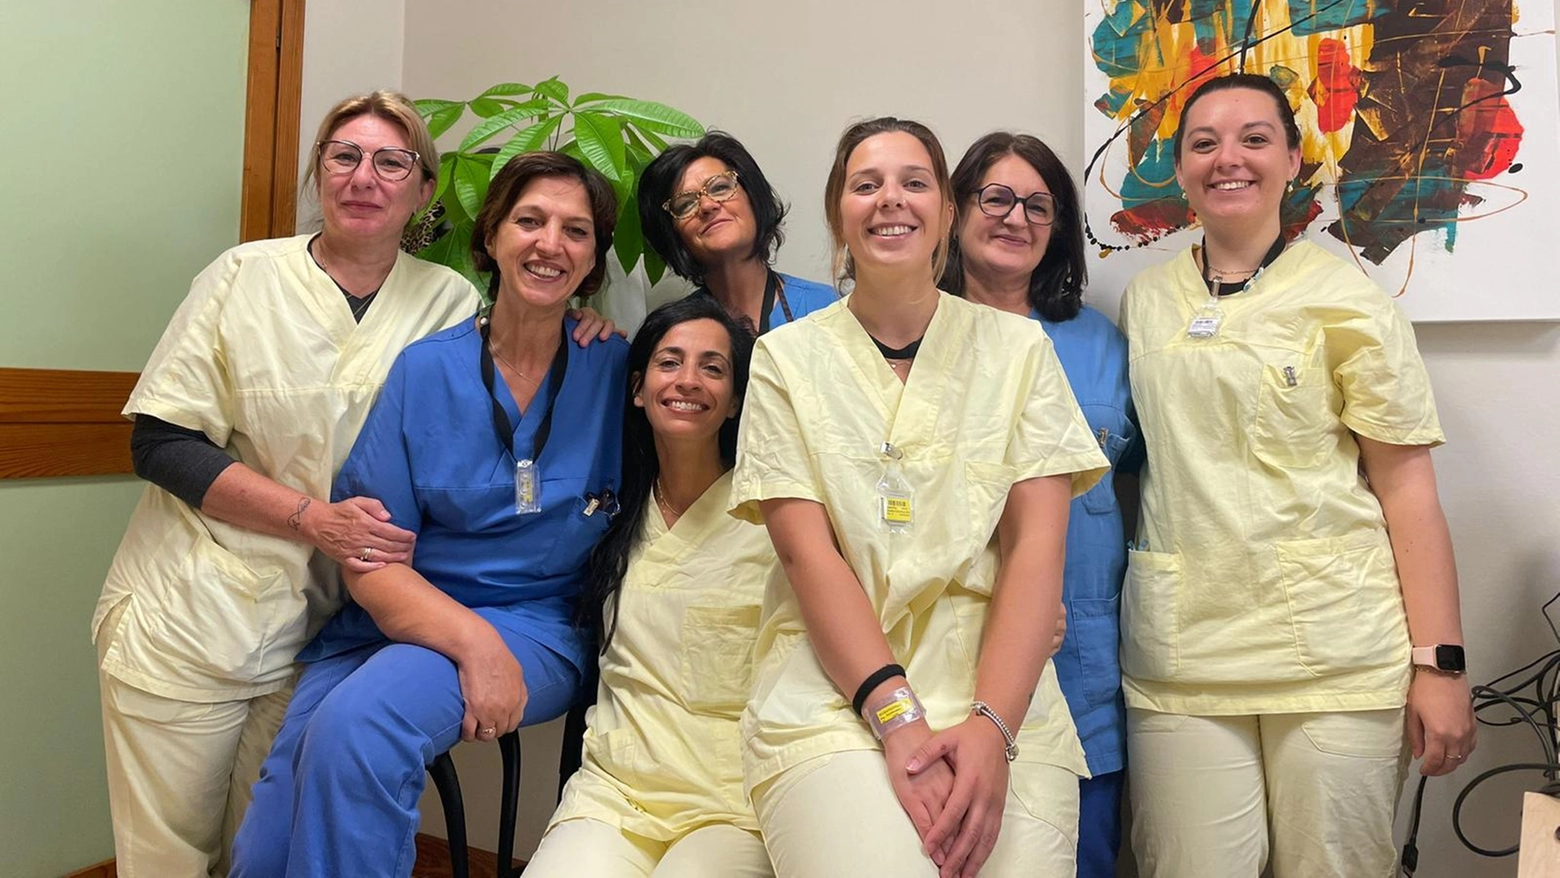 Medicina di genere: l'équipe del Centro Cardiodonna all'ospedale Mauriziano di Torino